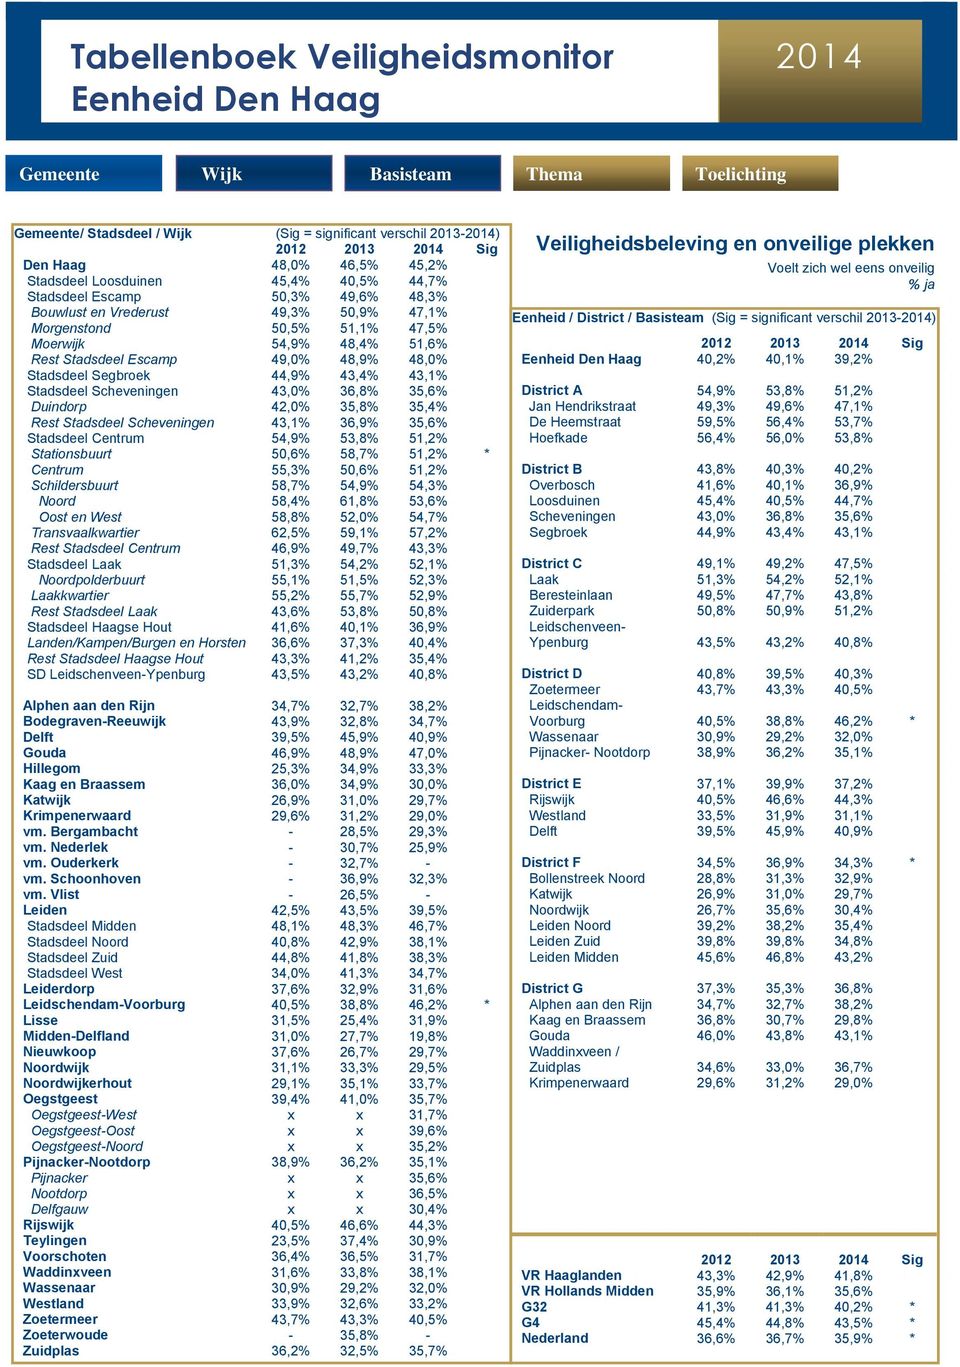 35,8% 35,4% Rest Stadsdeel Scheveningen 43,1% 36,9% 35,6% Stadsdeel Centrum 54,9% 53,8% 51,2% Stationsbuurt 50,6% 58,7% 51,2% * Centrum 55,3% 50,6% 51,2% Schildersbuurt 58,7% 54,9% 54,3% Noord 58,4%